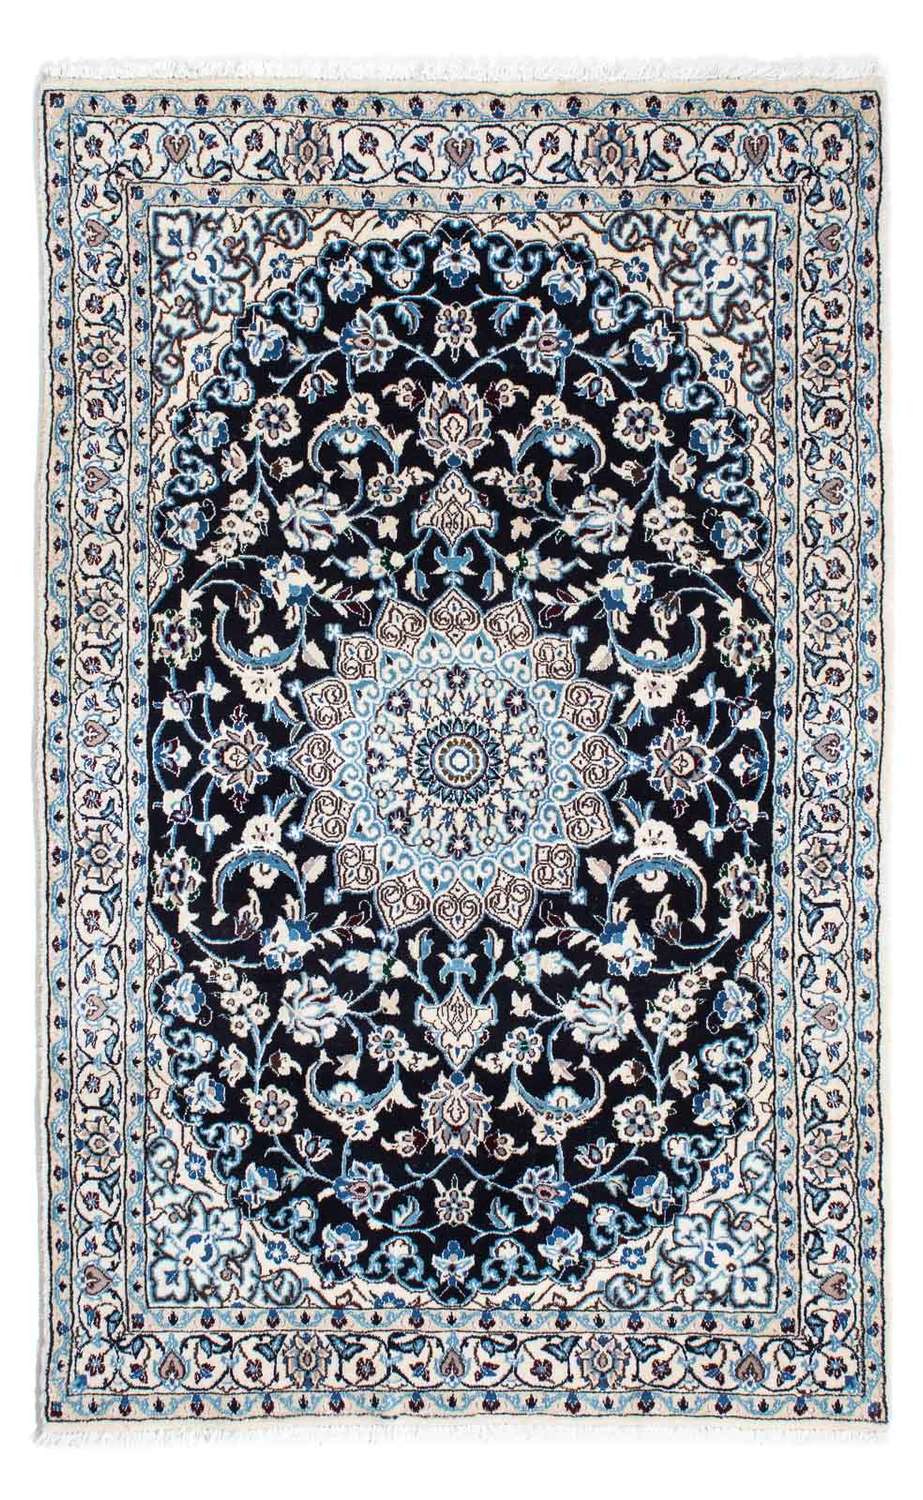 Tapis persan - Nain - Royal - 175 x 108 cm - bleu foncé